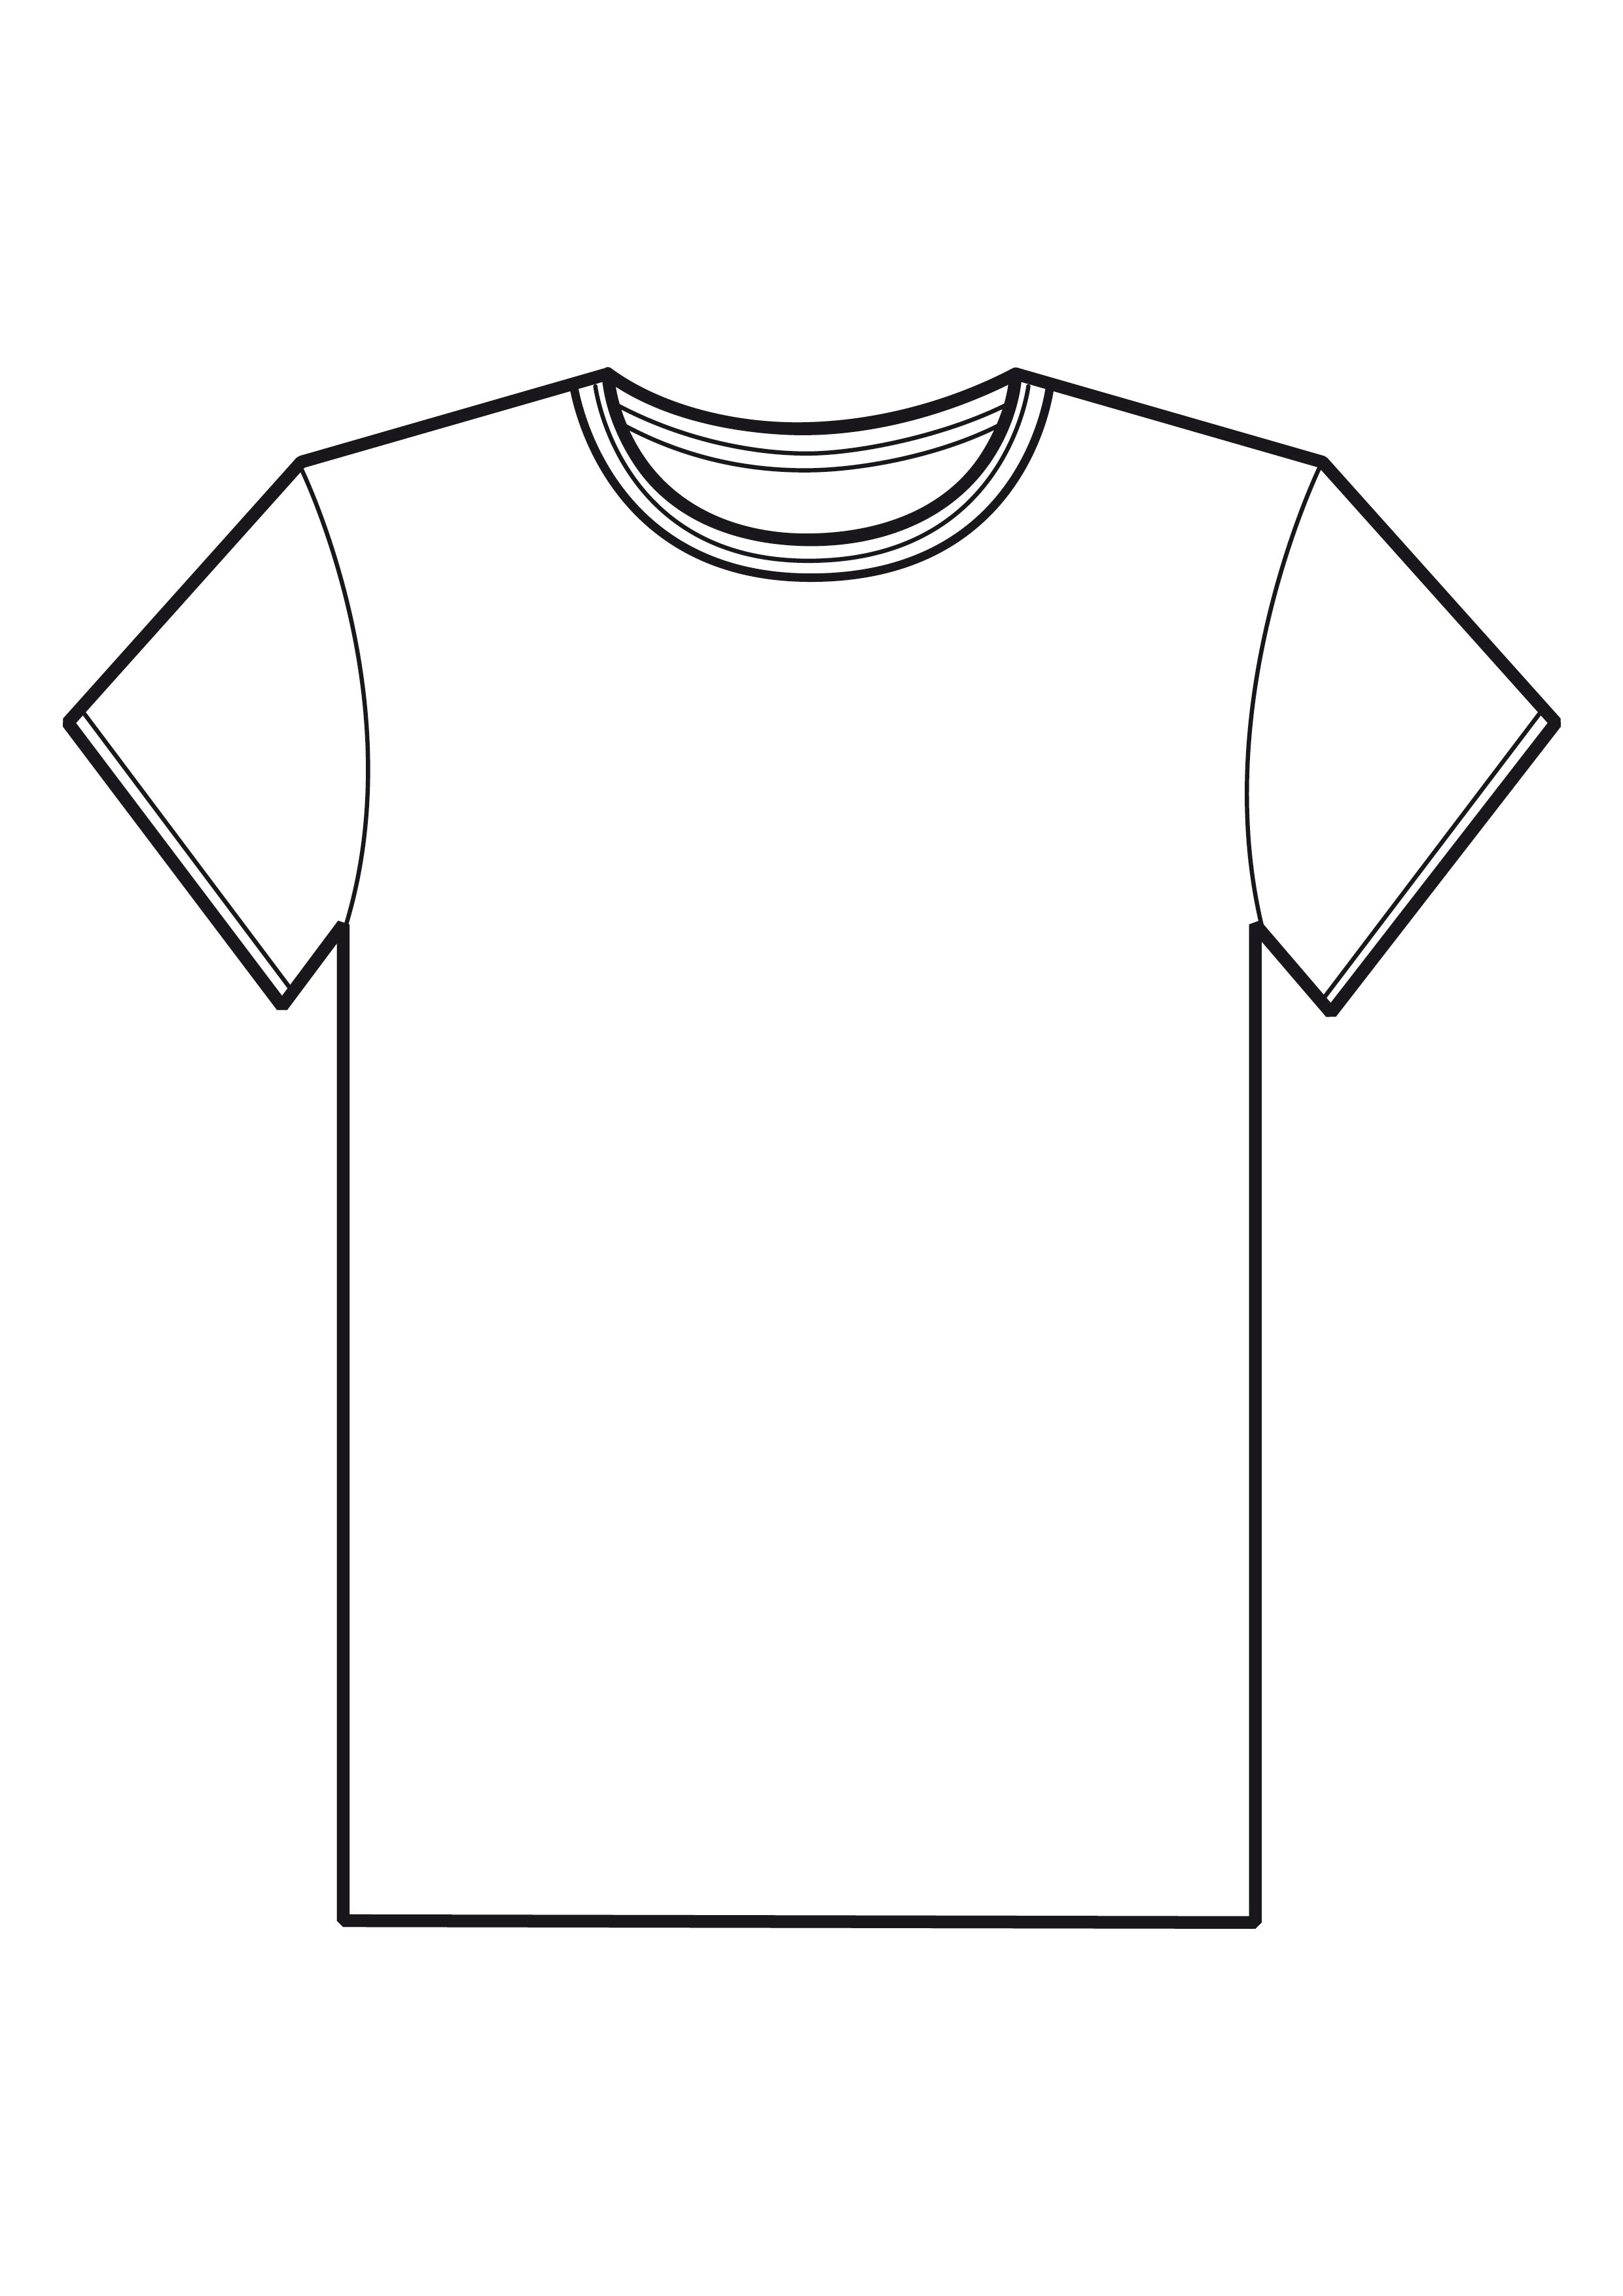 Shirt Template Clip Art Free 